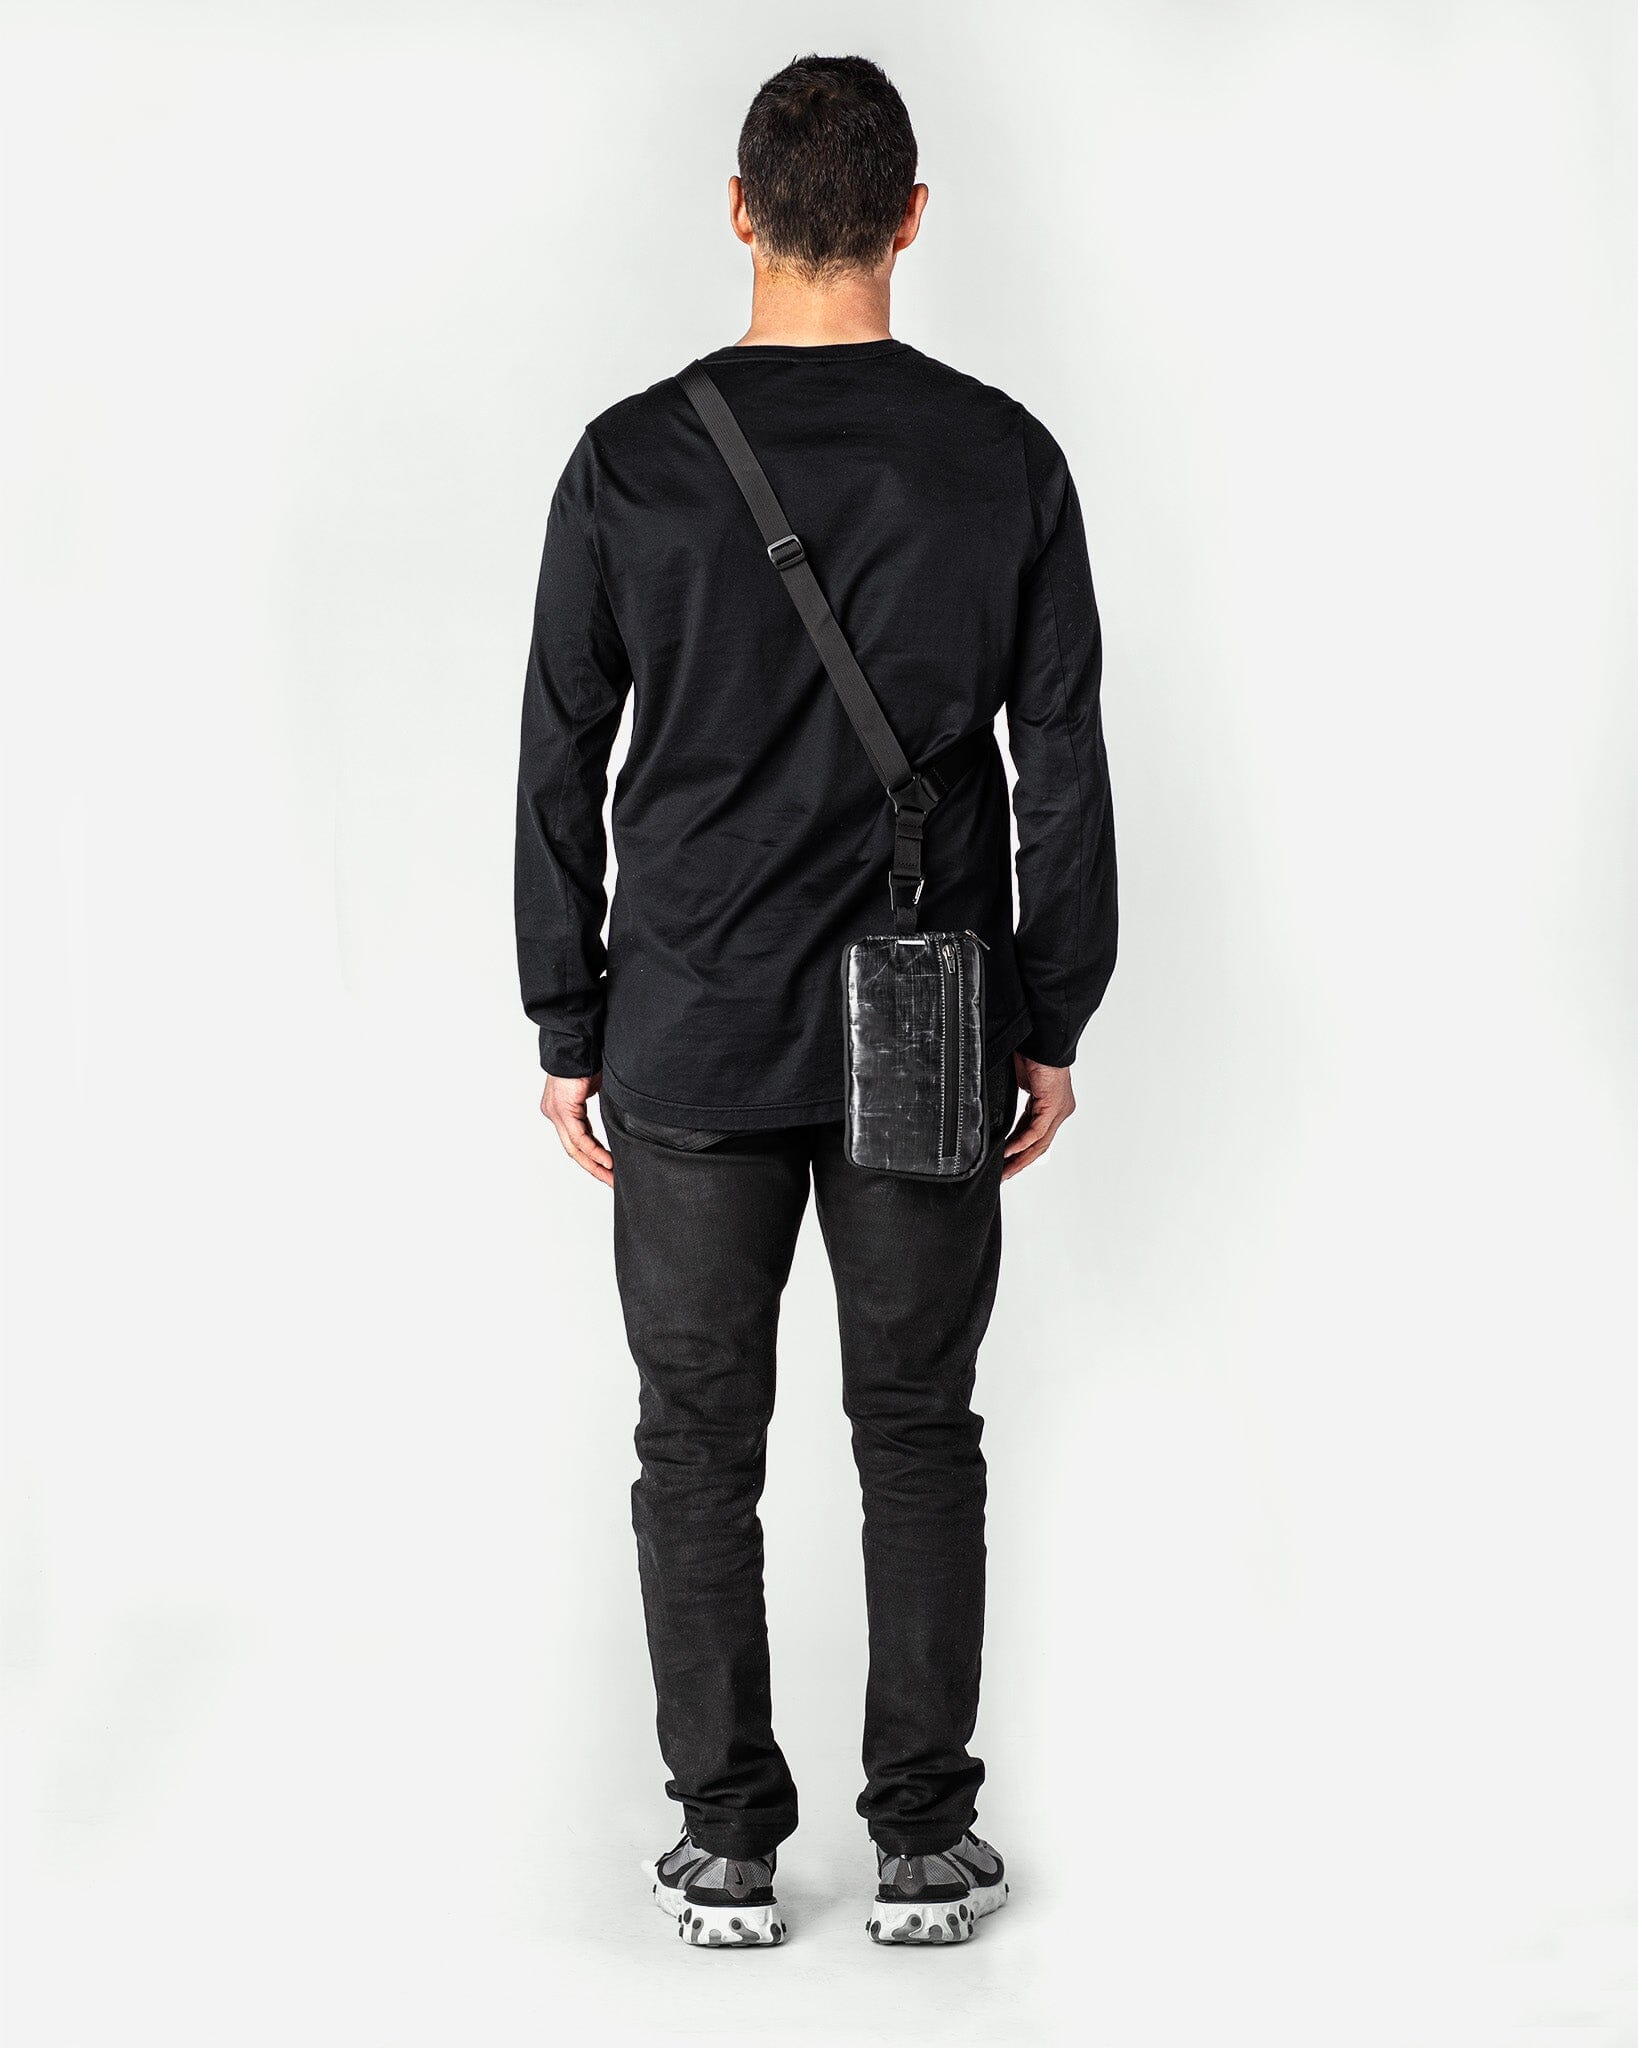 bolstr x Jae Capo AUX™ Pocket - Black Dyneema Bag bolstr   